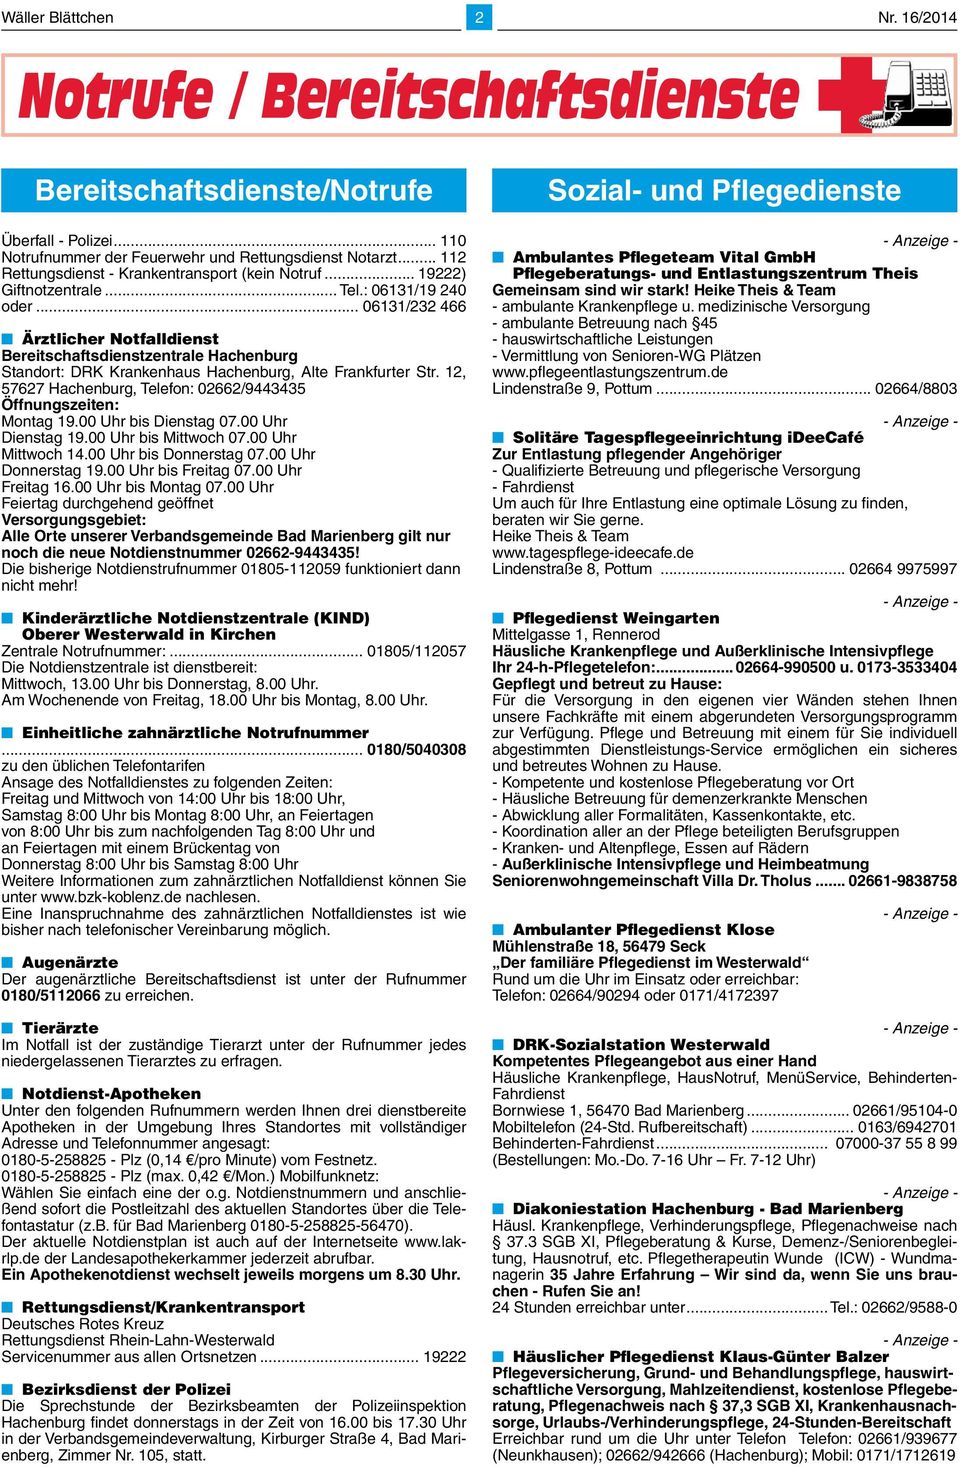 .. 06131/232 466 Ärztlicher Notfalldienst Bereitschaftsdienstzentrale Hachenburg Standort: DRK Krankenhaus Hachenburg, Alte Frankfurter Str.